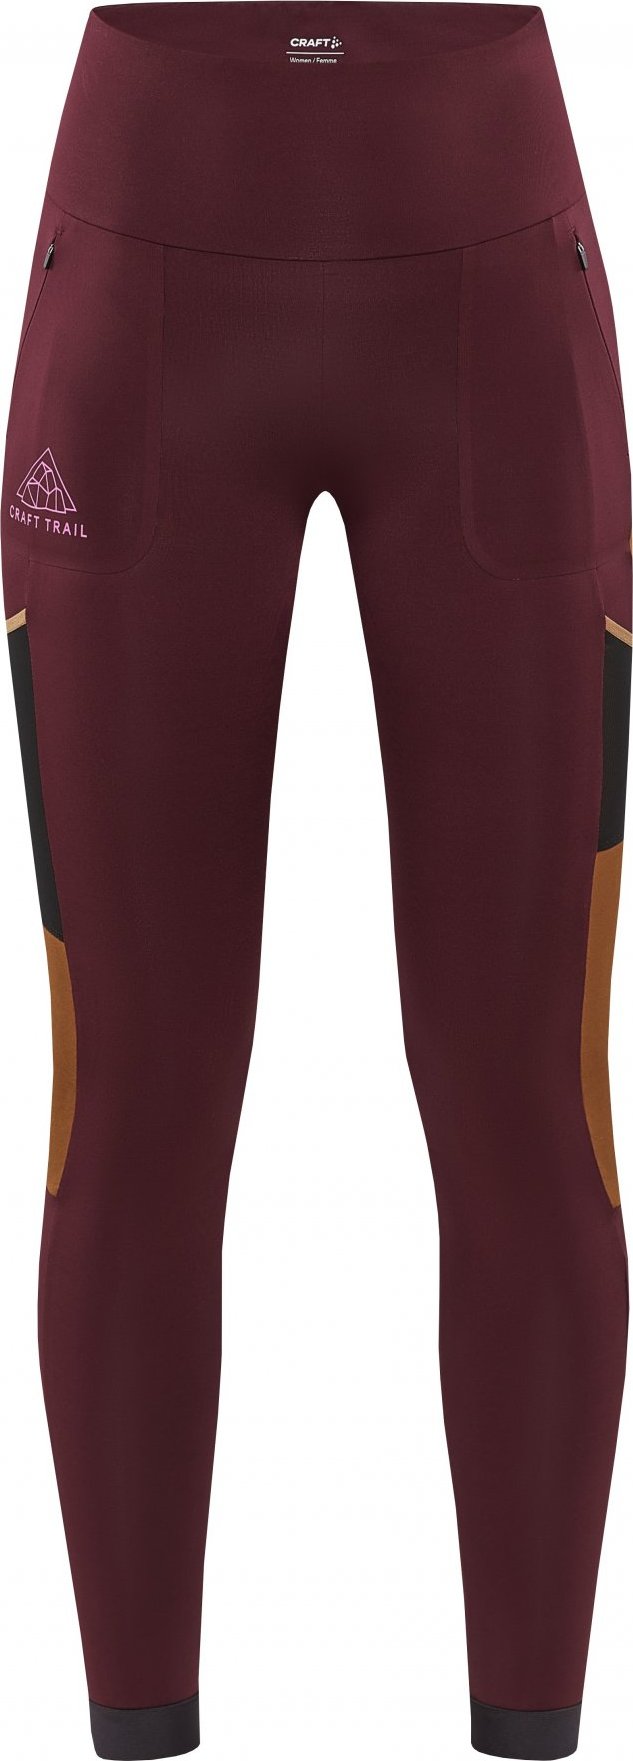 Dámské elastické kalhoty CRAFT Pro Trail Tights fialové Velikost: XS